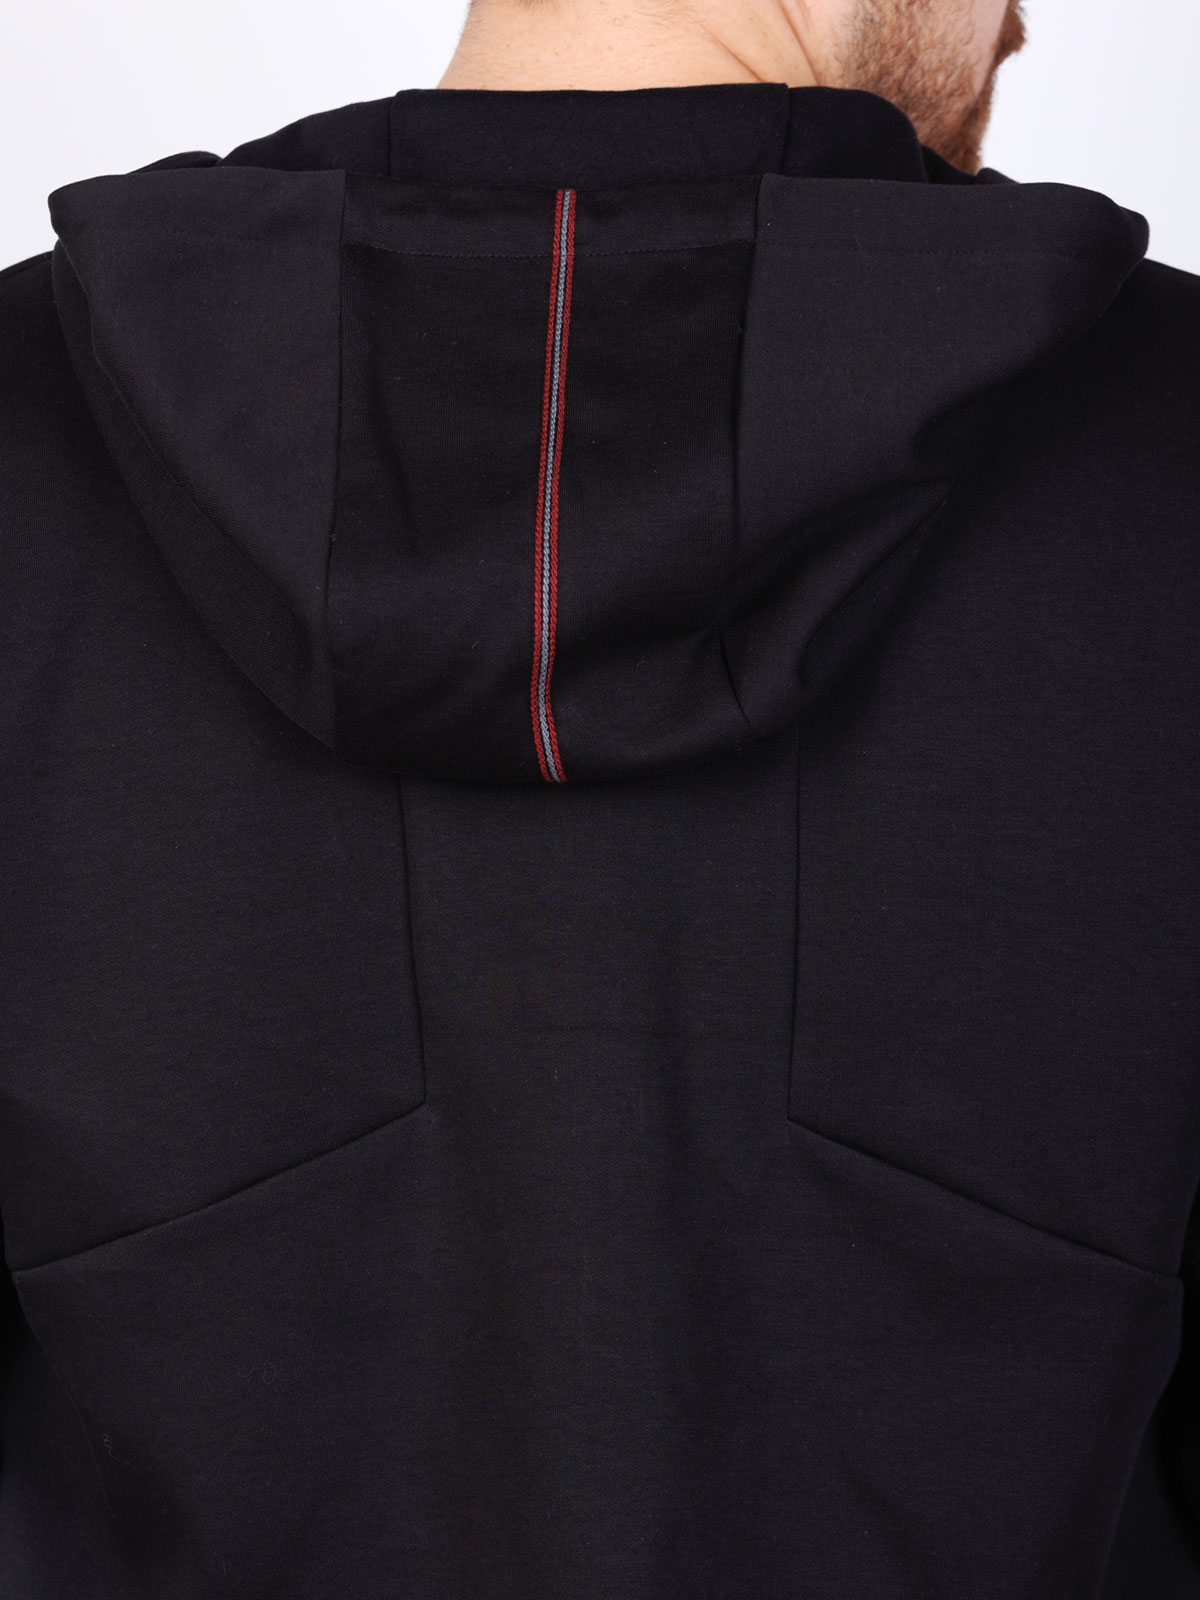 Sporty black hooded sweatshirt - 28111 € 44.43 img3